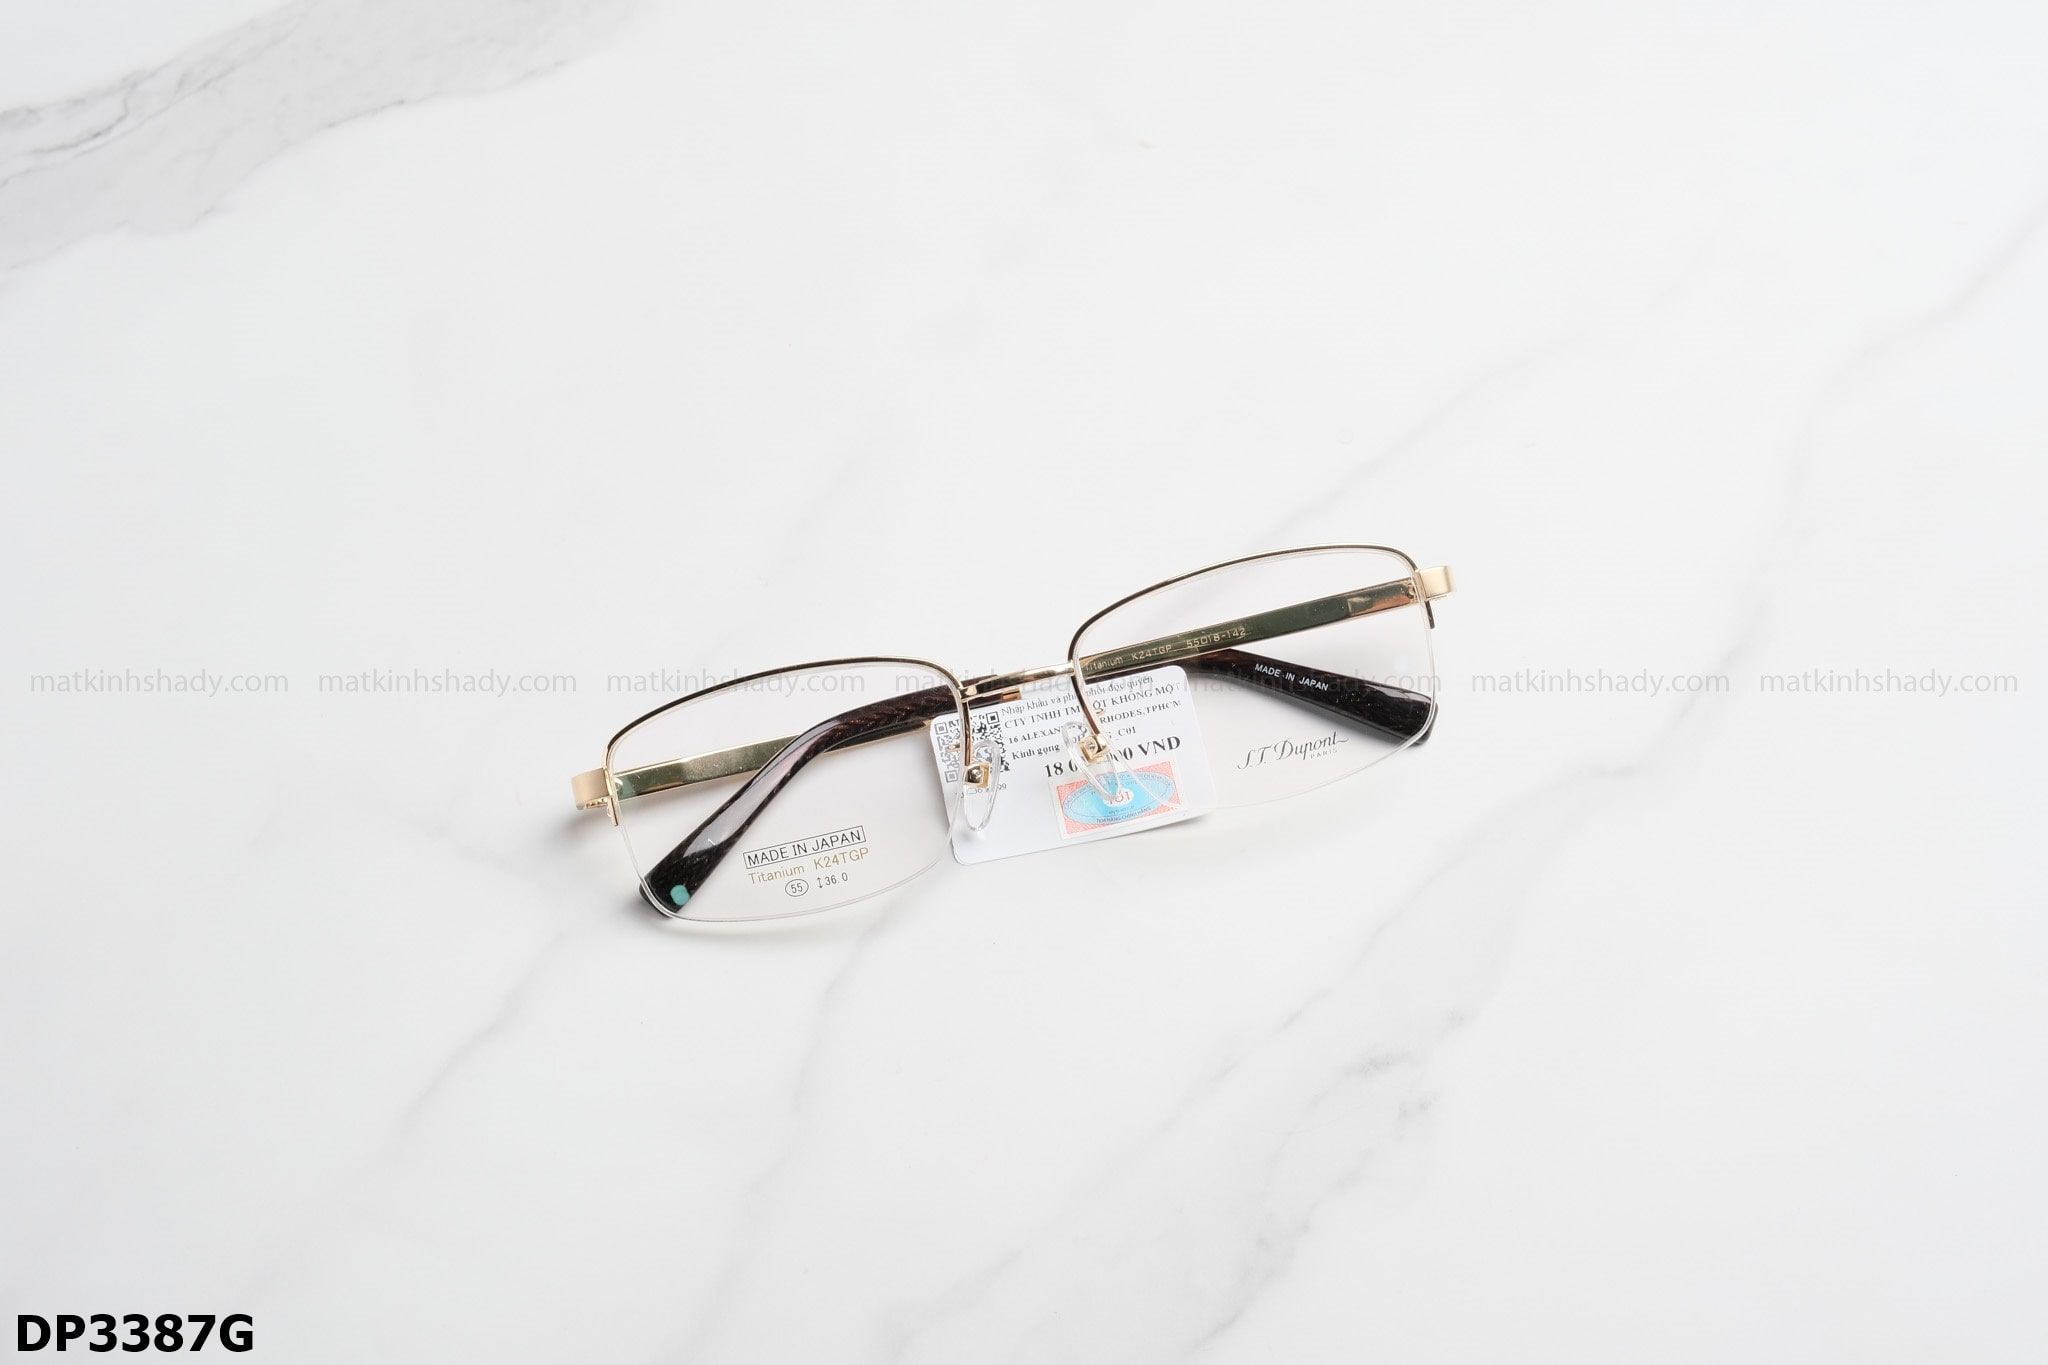  S.T.Dupont Eyewear - Glasses - DP3387G 